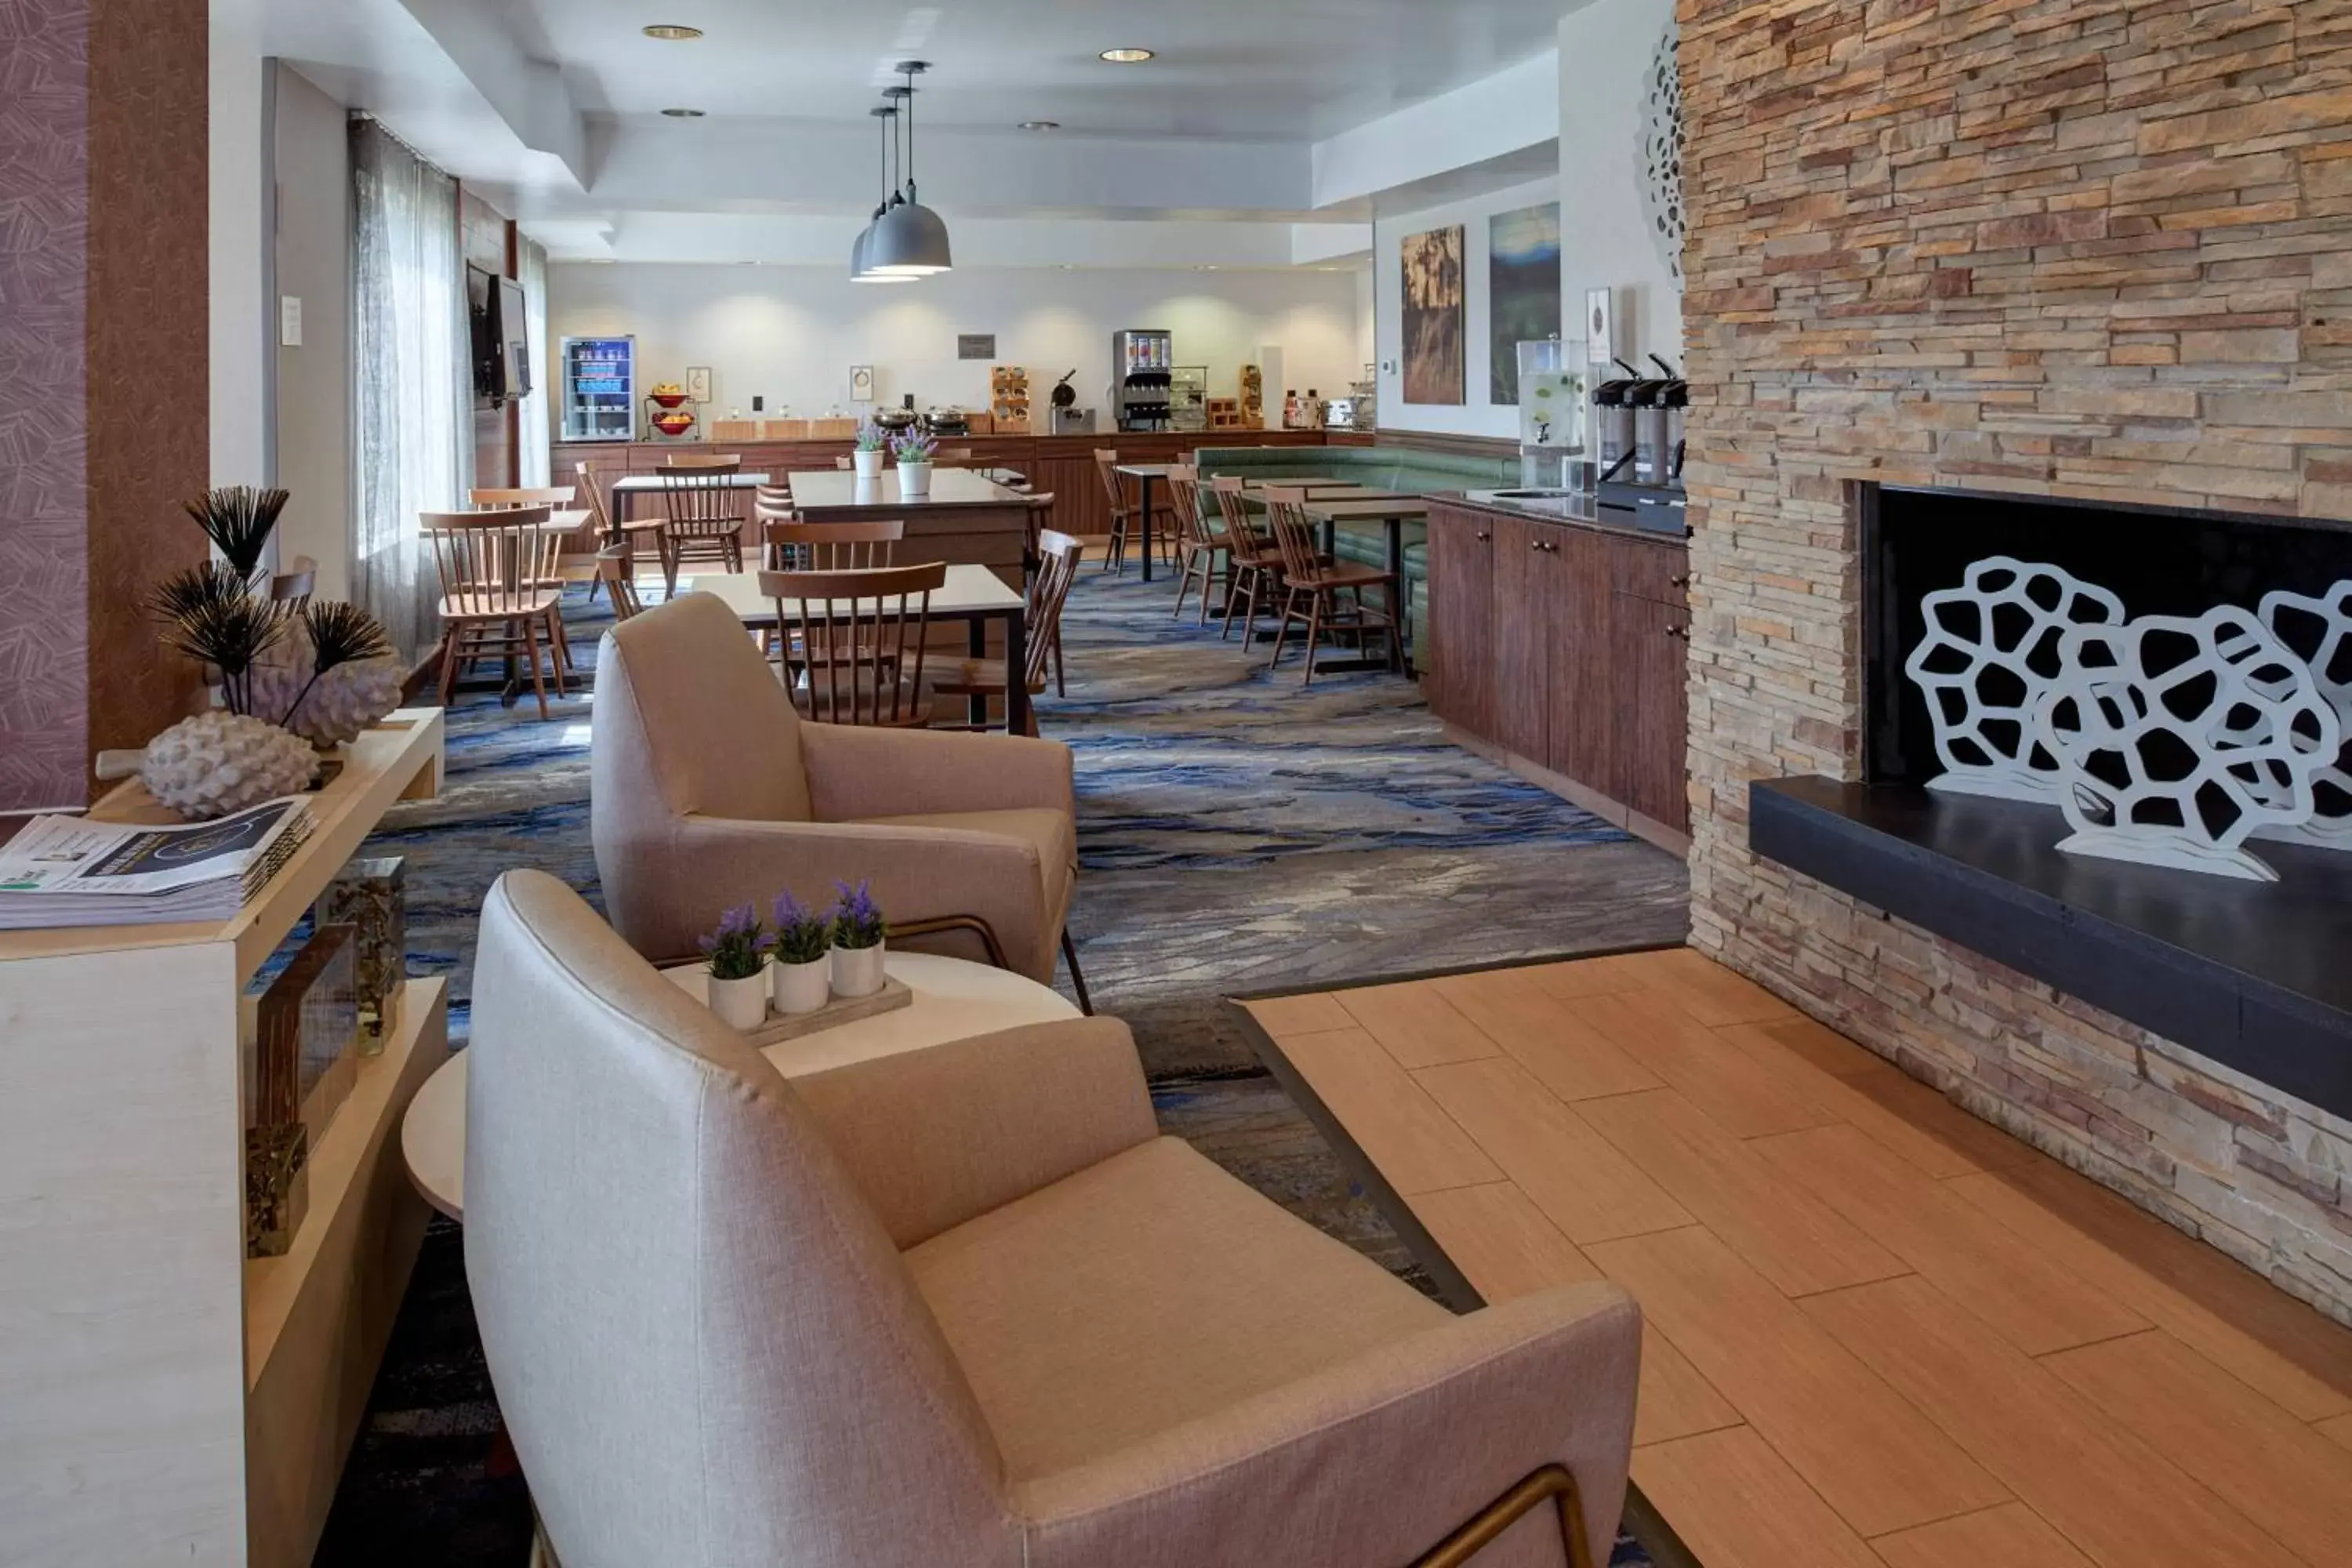 Lobby or reception in Fairfield Inn by Marriott Kalamazoo West